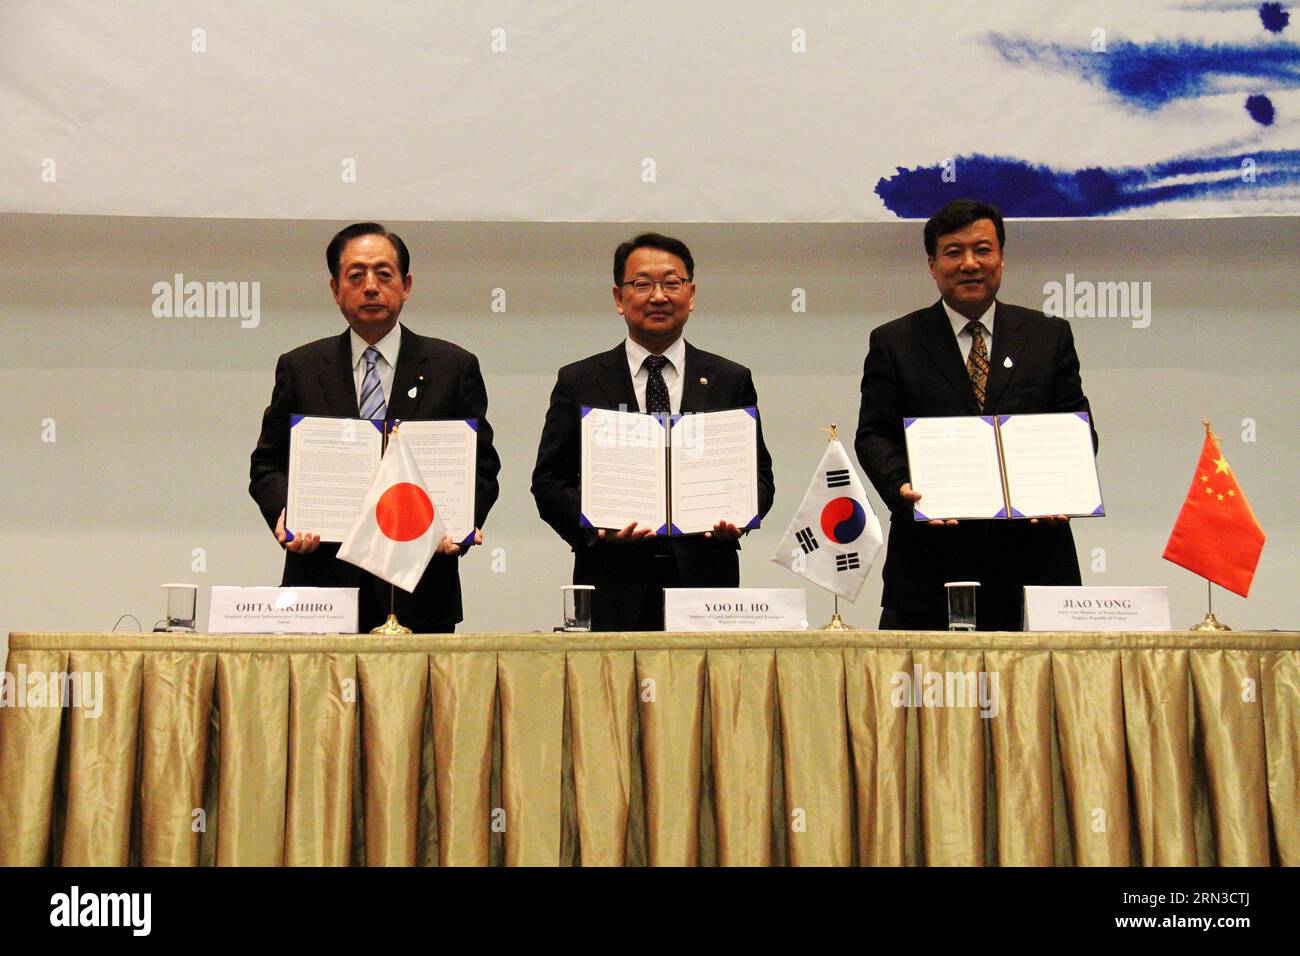 (150413) -- GYEONGJU, 13 aprile 2015 -- Vice Ministro delle risorse idriche della Cina Jiao Yong, Ministro della terra, delle infrastrutture e dei trasporti della Corea del Sud Yoo il-ho e Ministro del territorio e delle infrastrutture del Giappone, trasporti e turismo Ohta Akihiro (R-L) posa per una foto dopo aver firmato una dichiarazione congiunta durante una riunione ministeriale trilaterale al settimo Forum mondiale sull'acqua tenutosi a Gyeongju, Corea del Sud, 13 aprile 2015. La Cina, la Corea del Sud e il Giappone hanno concordato lunedì di rafforzare la cooperazione trilaterale sull'innovazione della politica idrica durante il settimo Forum mondiale sull'acqua tenutosi nel sud-est della Corea del Sud Foto Stock